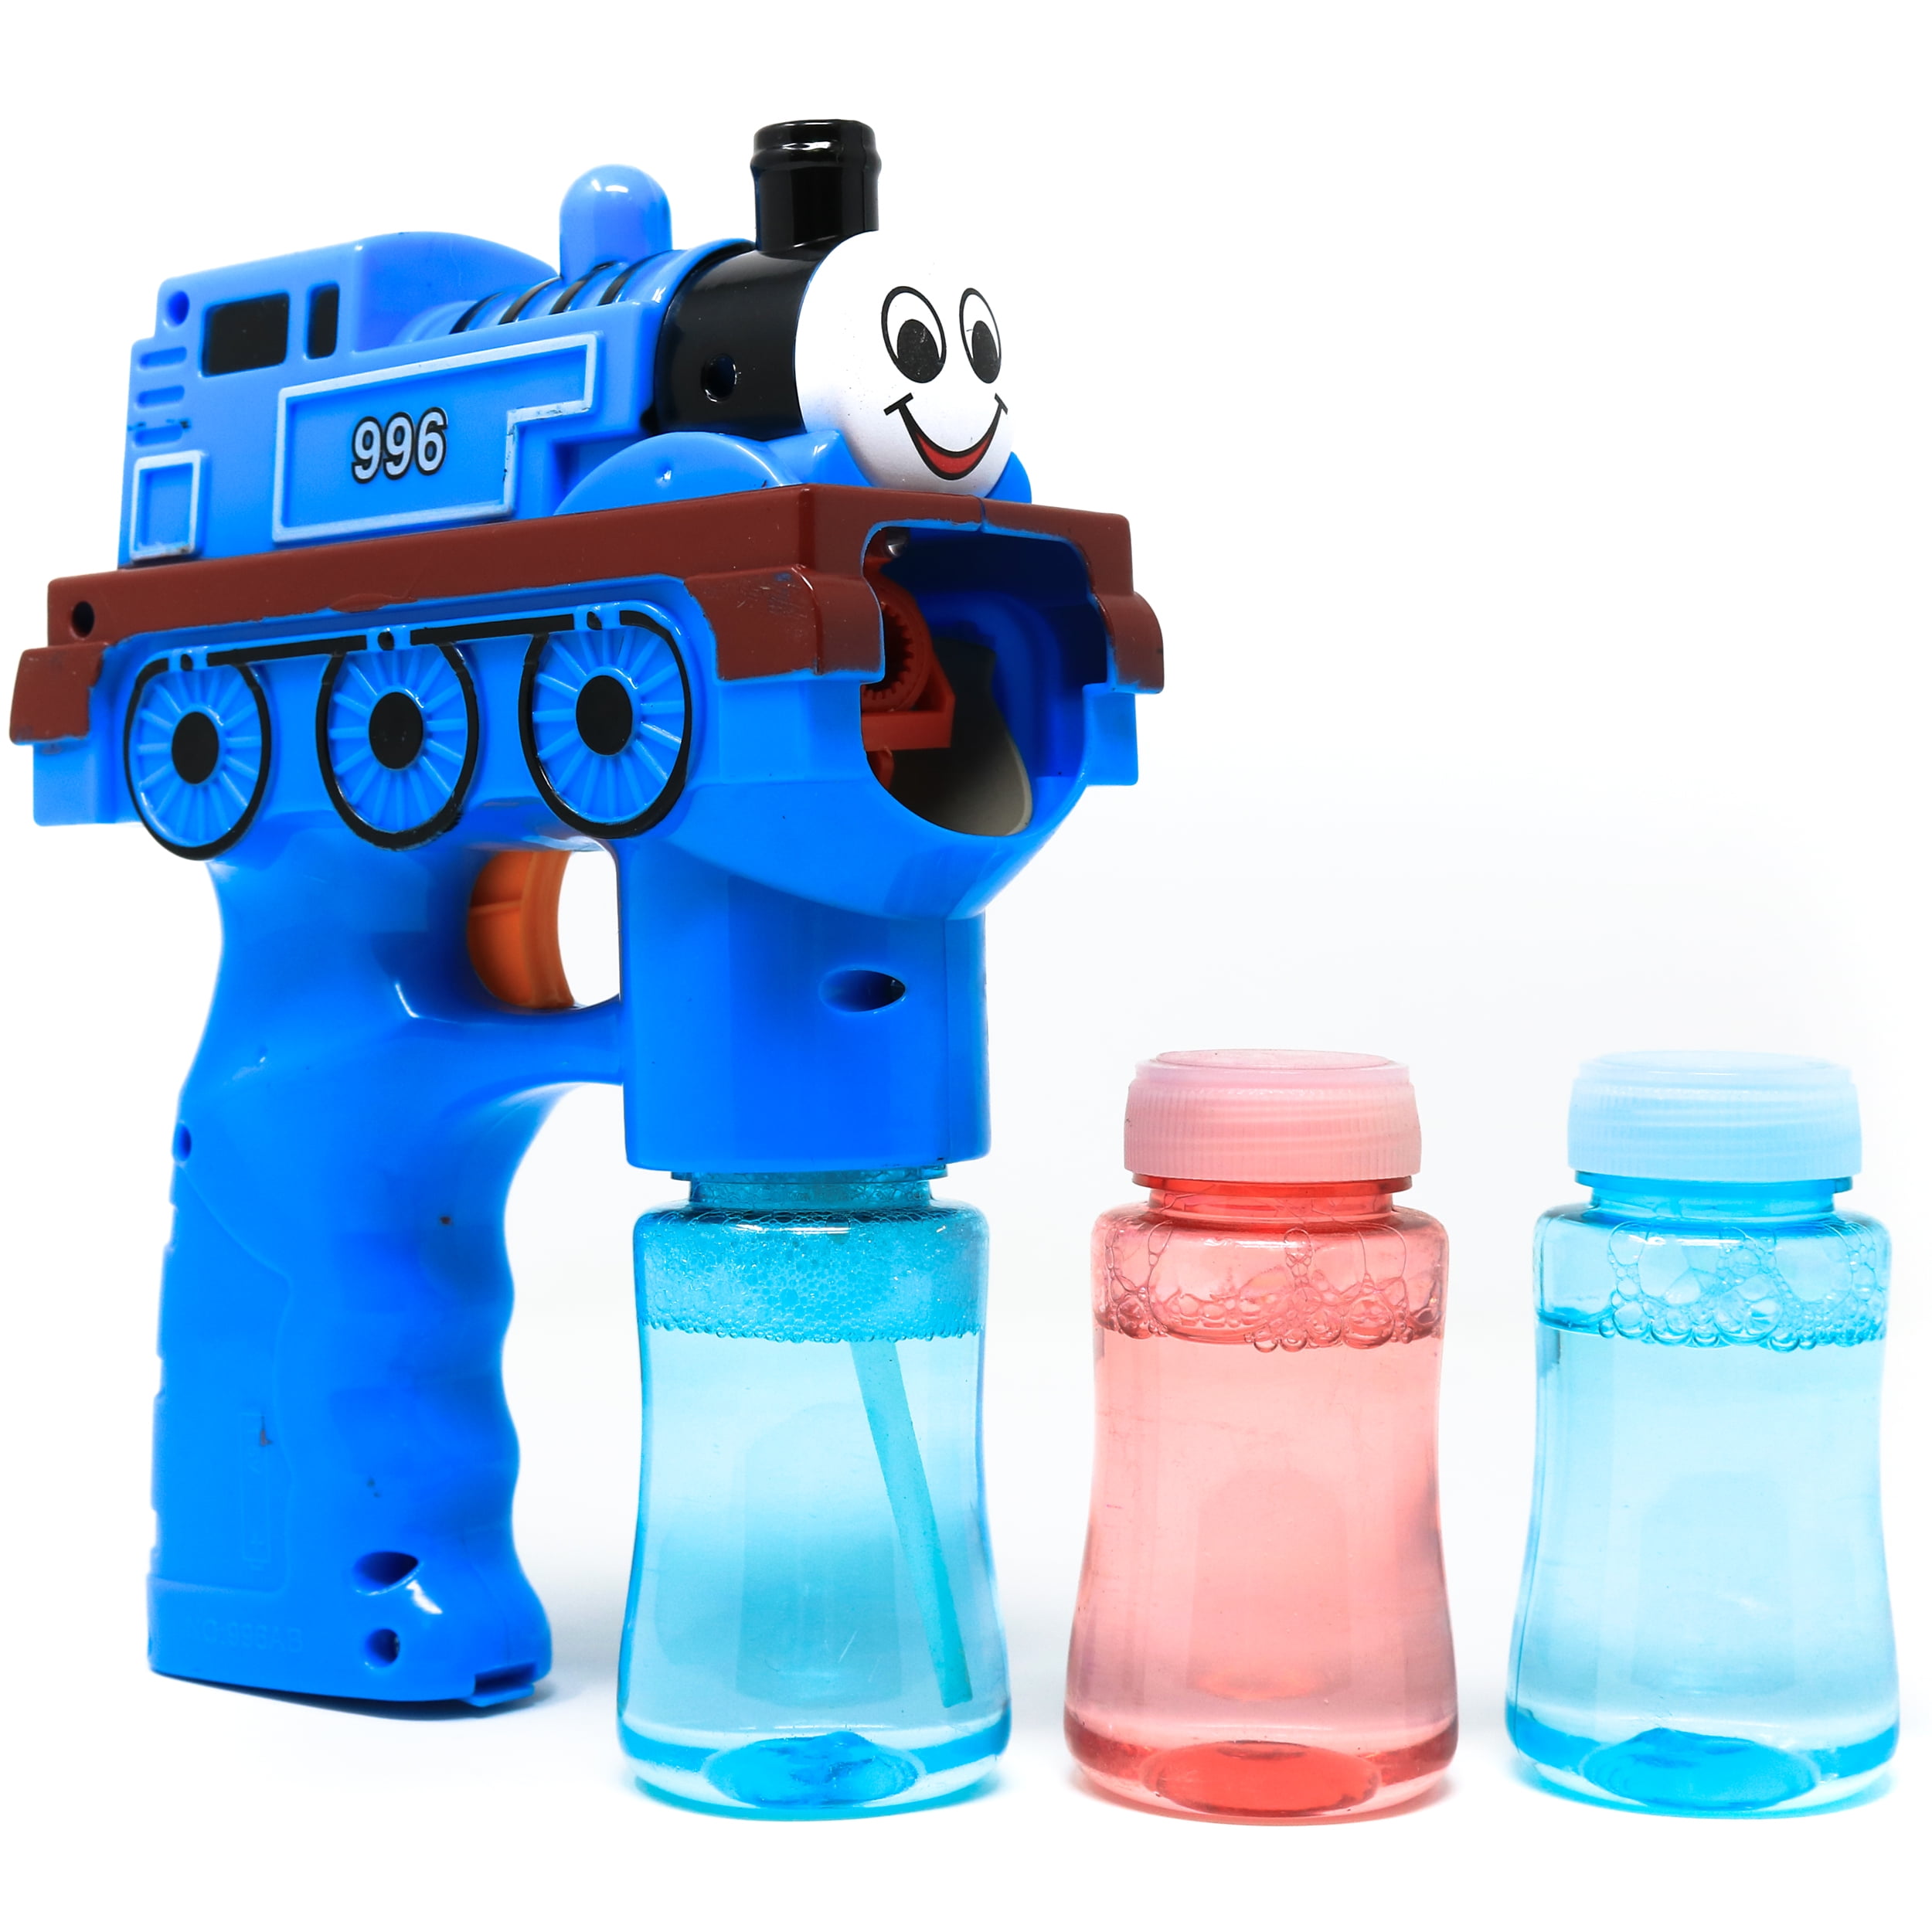 LIGHT UP CLOWN FISH BUBBLE GUN WITH SOUND toy bottle bubbles maker machine NEW 